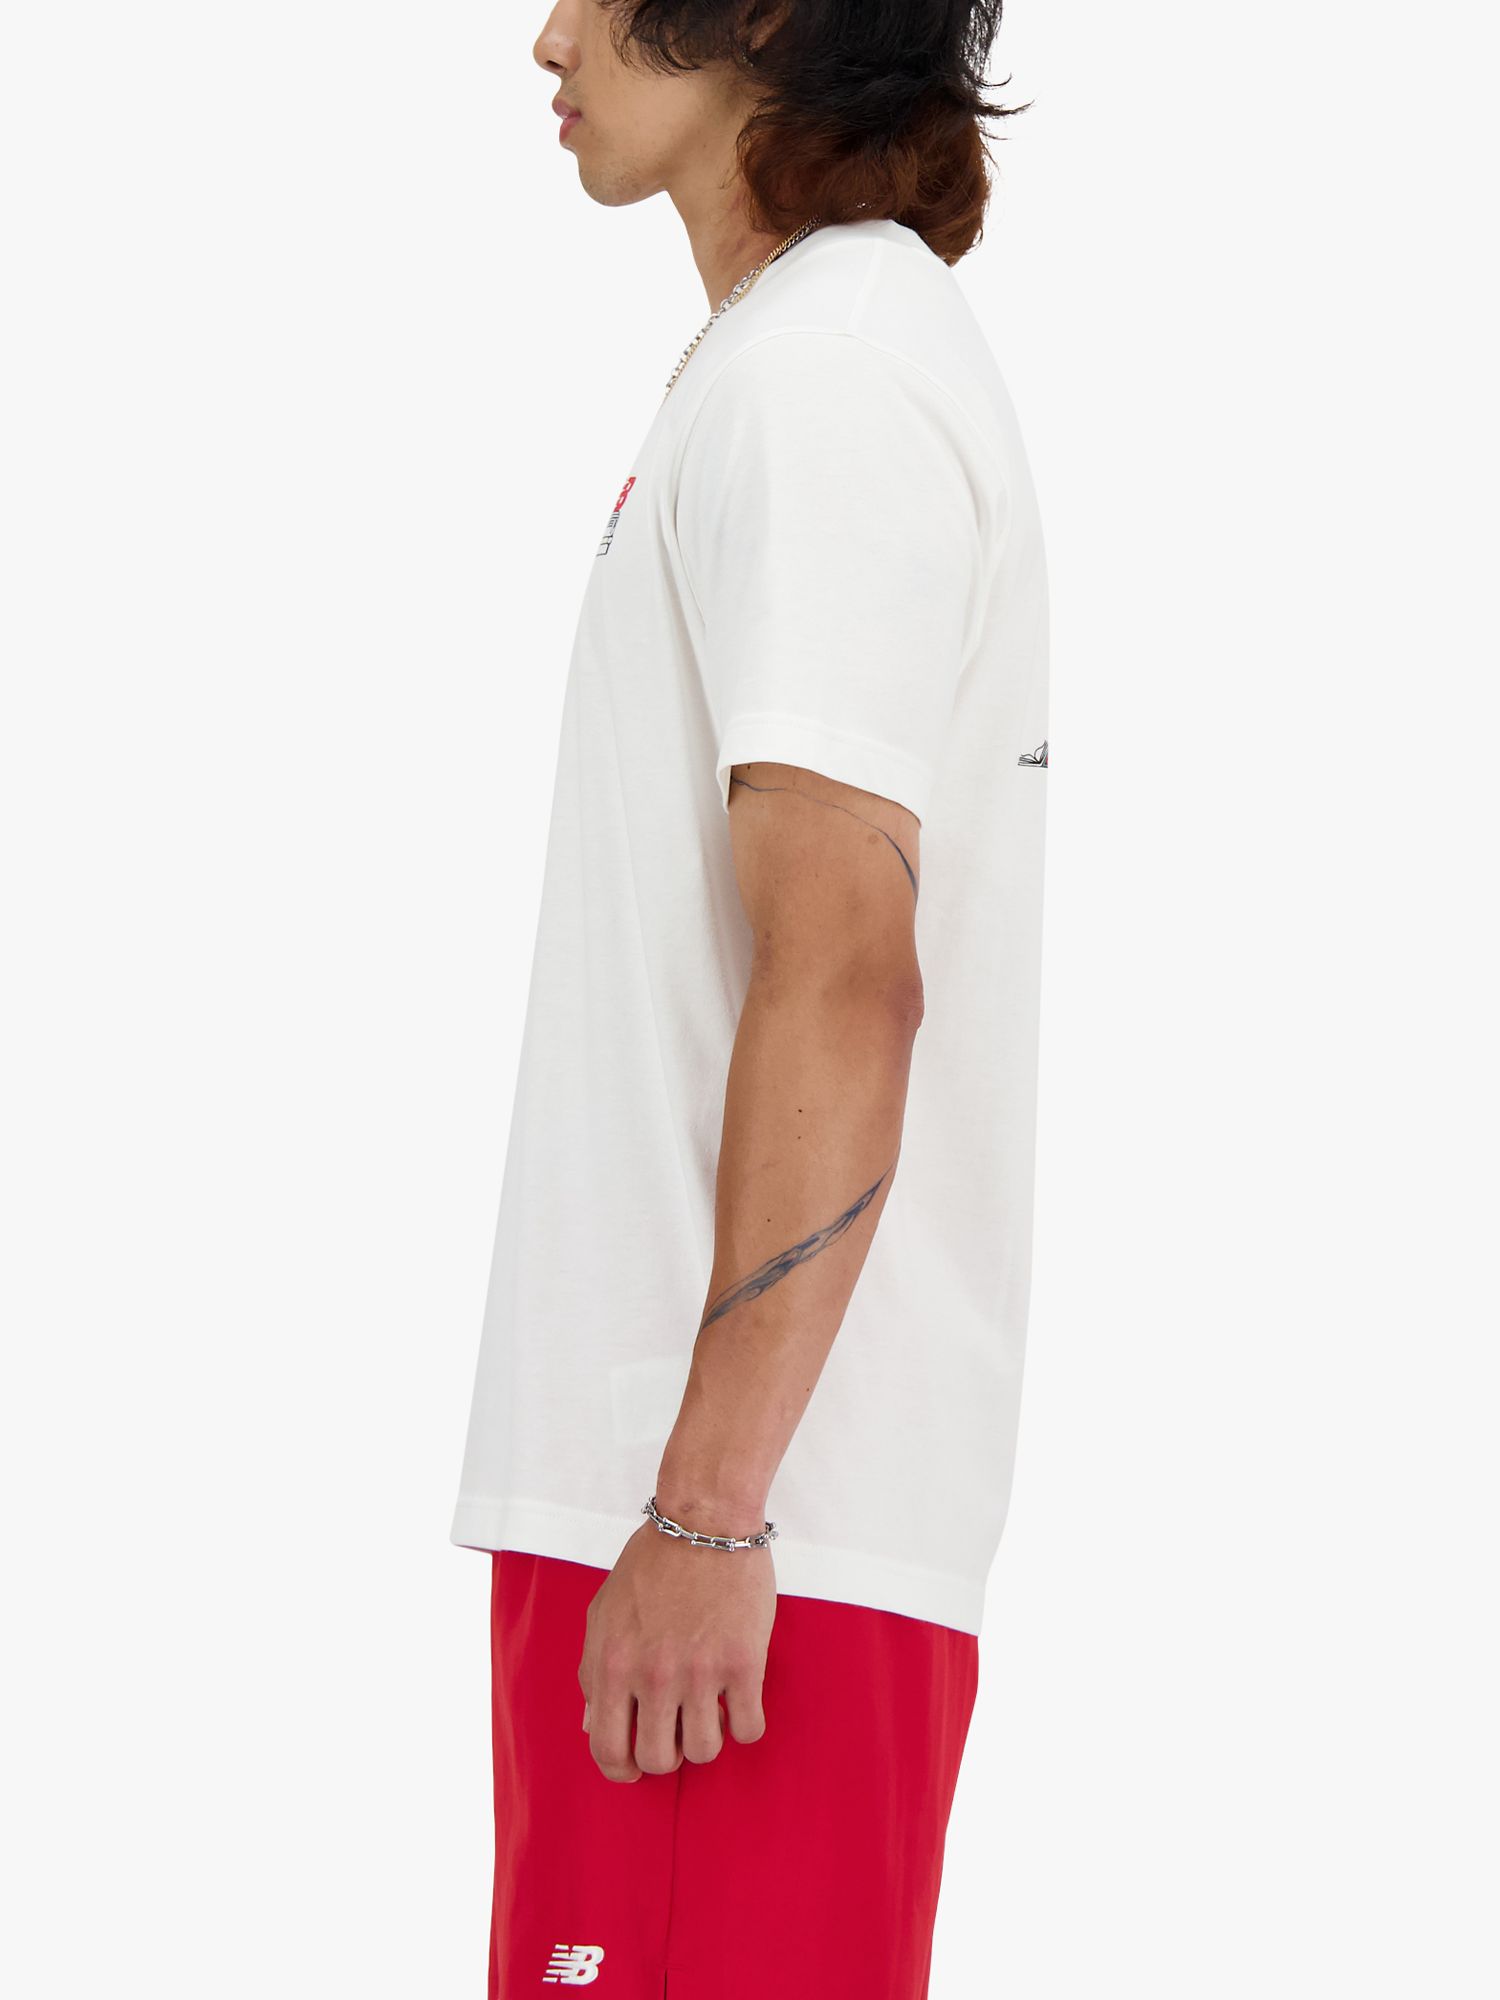 New Balance Graphic T-Shirt, White, S